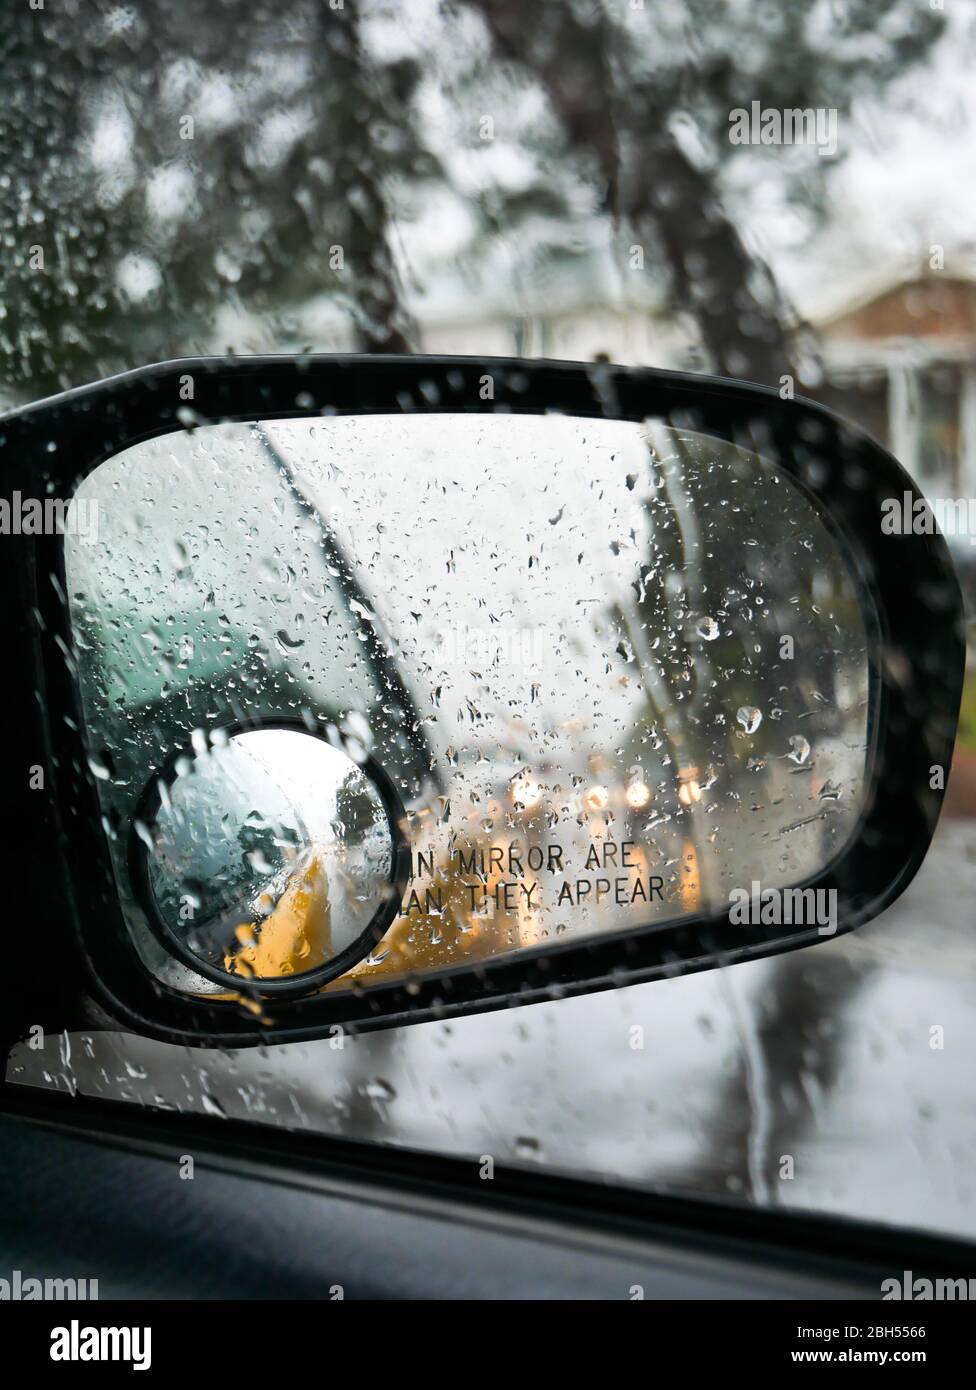 Kostenloses Foto zum Thema: auto, geheimnis, mini van, nacht, regen,  seitenspiegel, städtisch, tropfen, vertikaler schuss